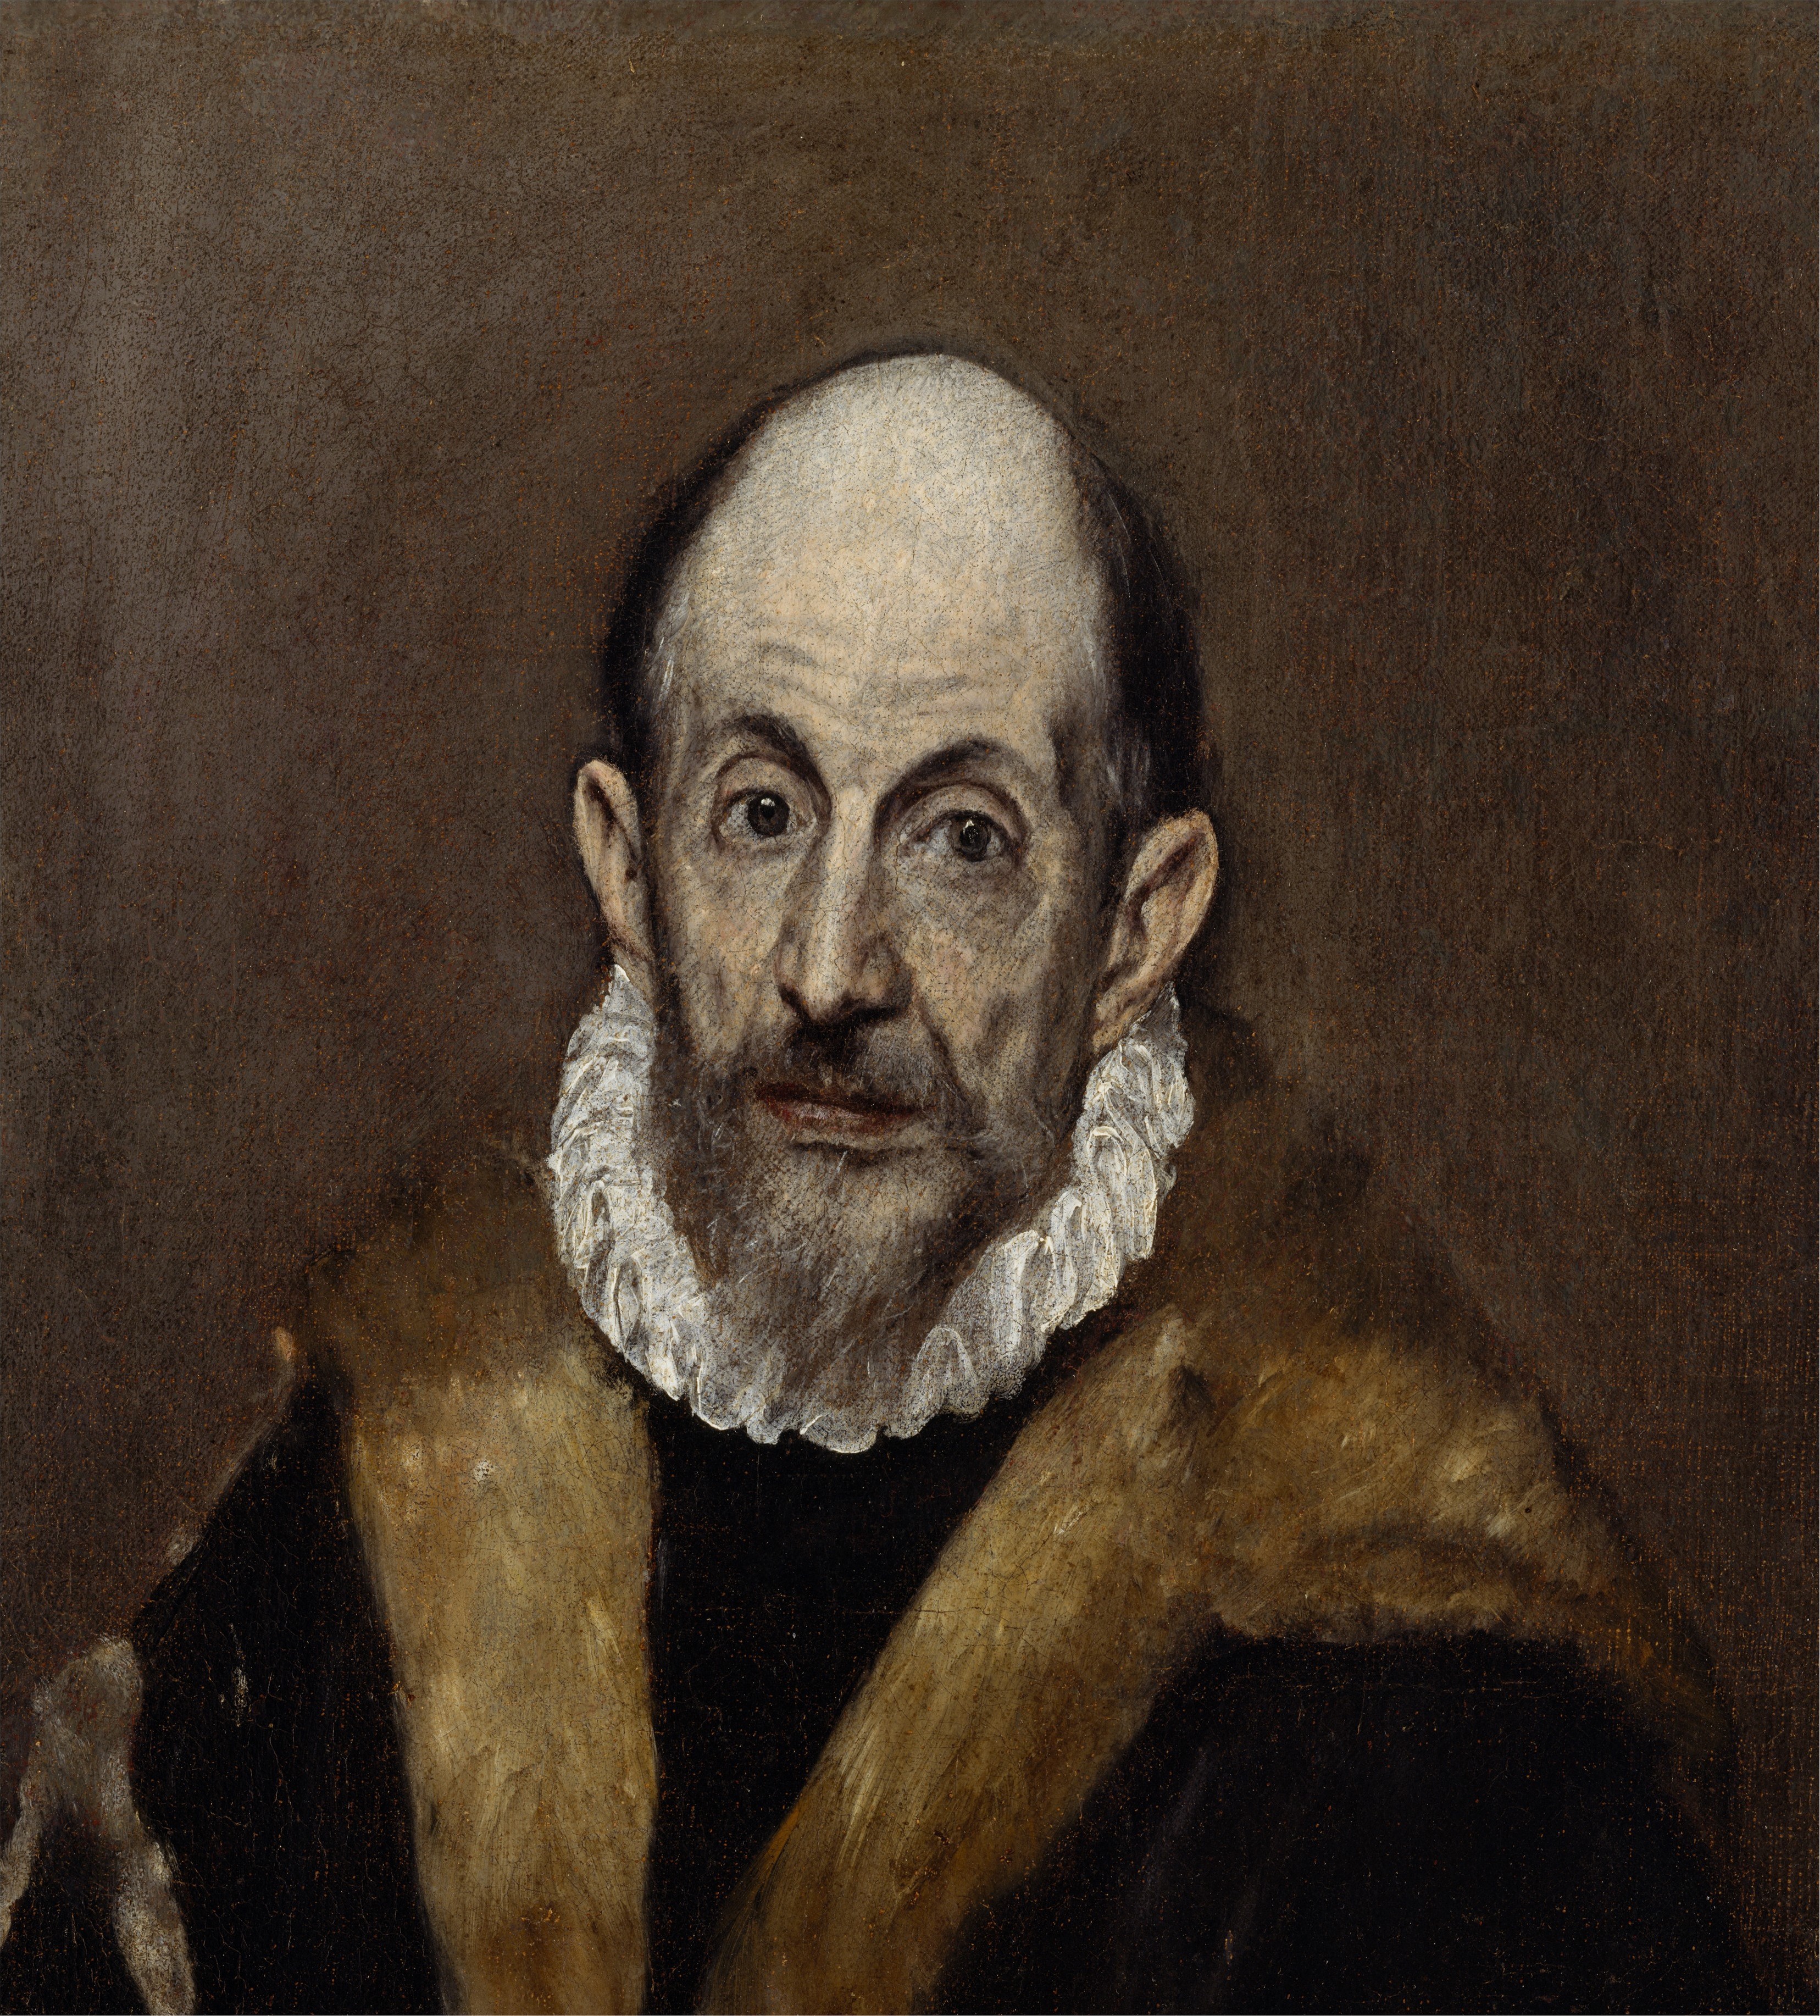 El Greco - 1541 - 7 April 1614